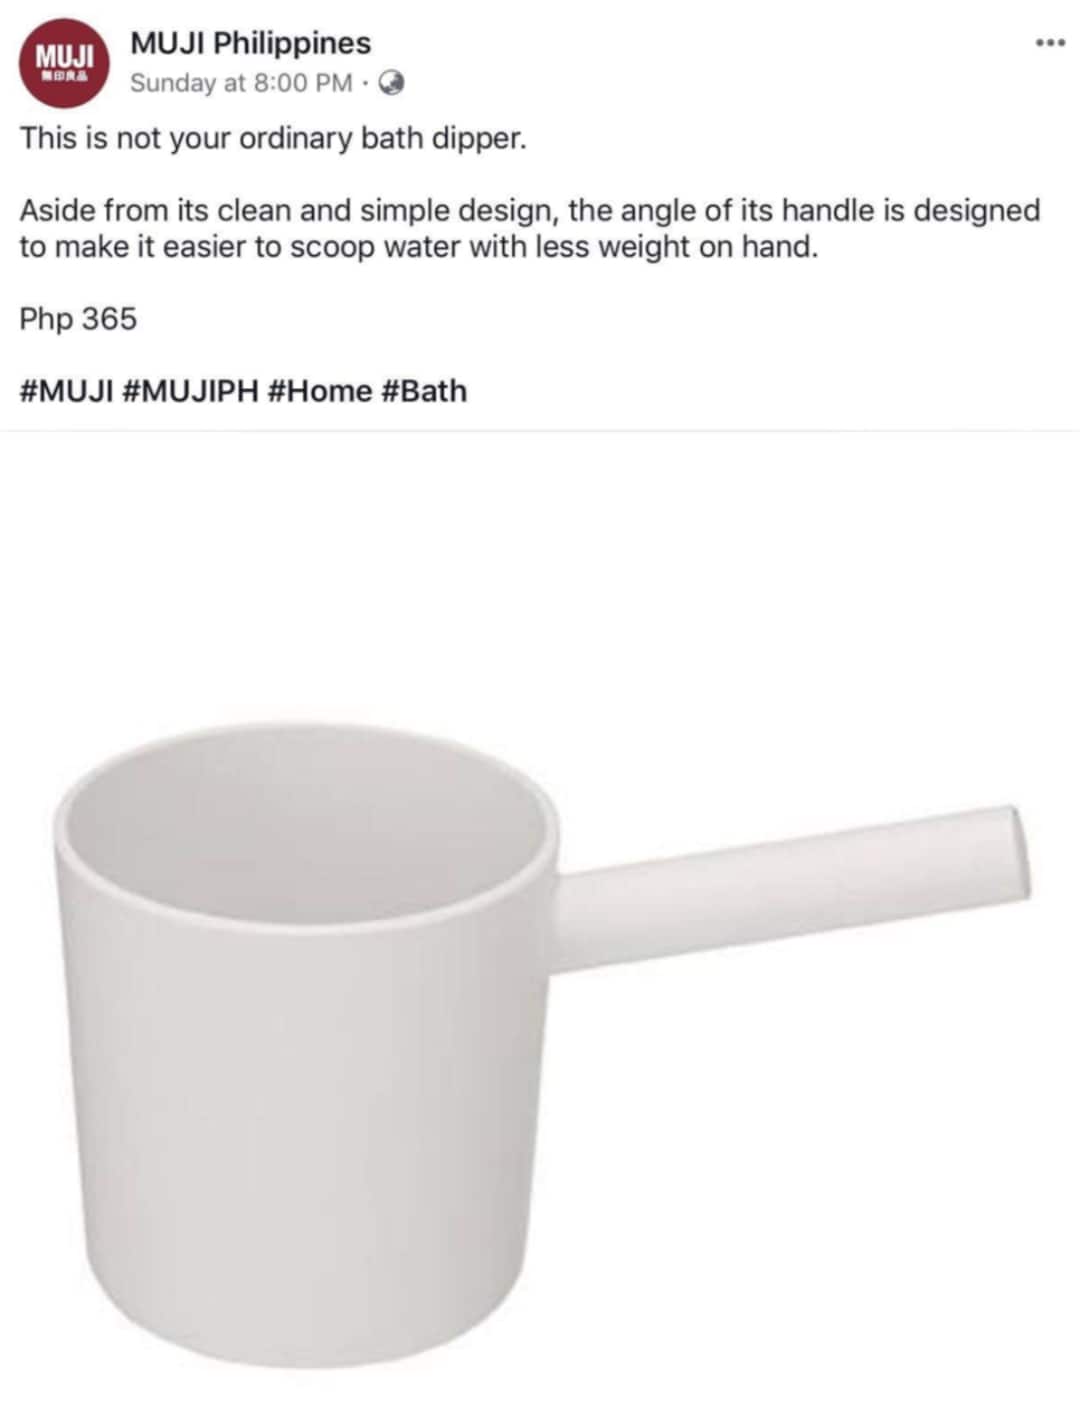 【銀座】「世界の無印良品」の紹介 | MUJI PHILIPPINESで話題になったポリプロピレン片手桶と地域の生活